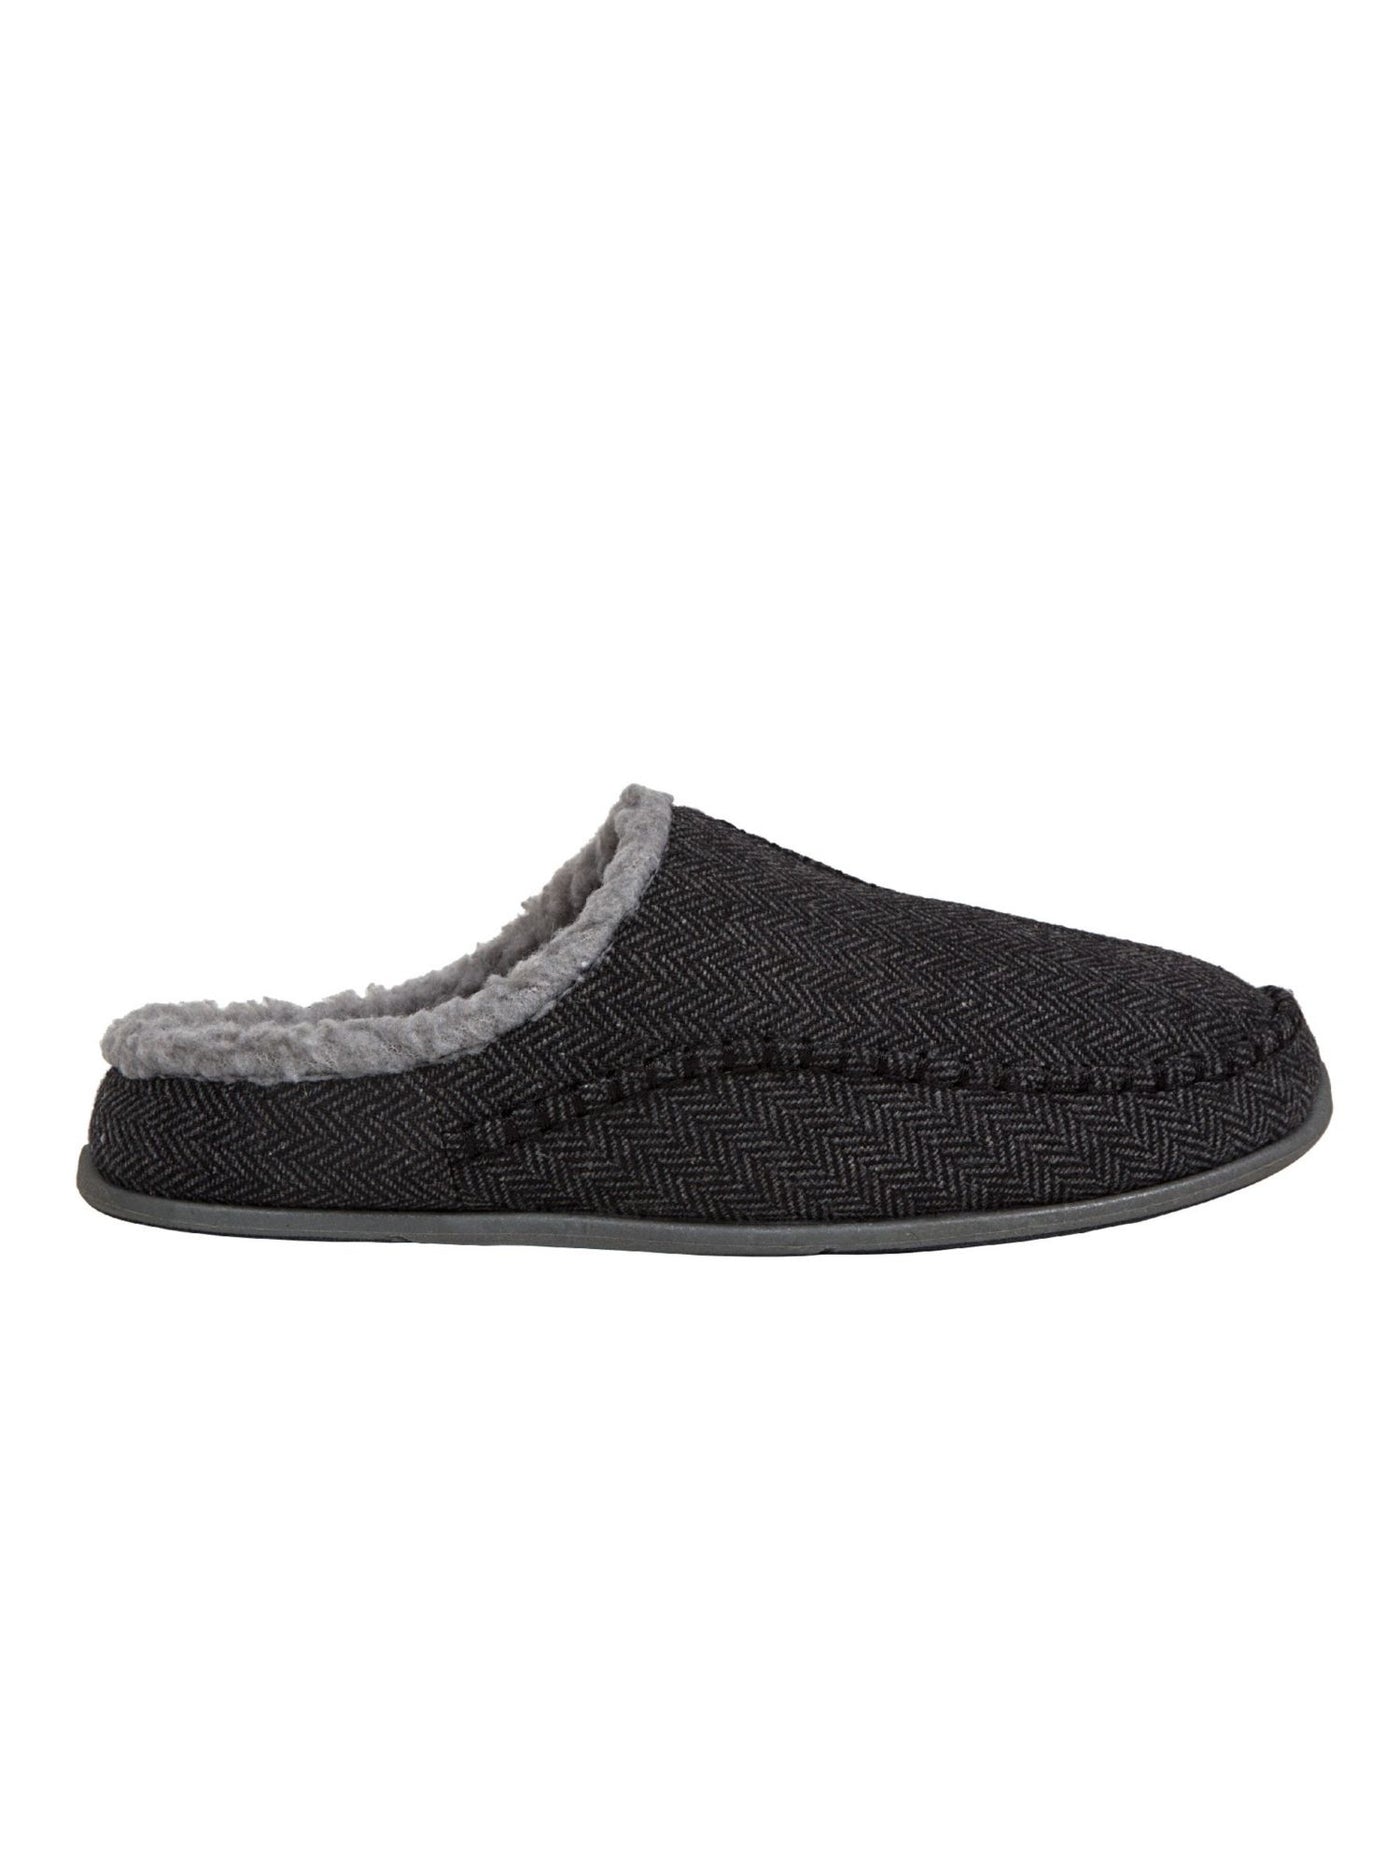 DEER STAGS SLIPPEROOZ Mens Black Herringbone Comfort Nordic Round Toe Slip On Slippers Shoes 10 M